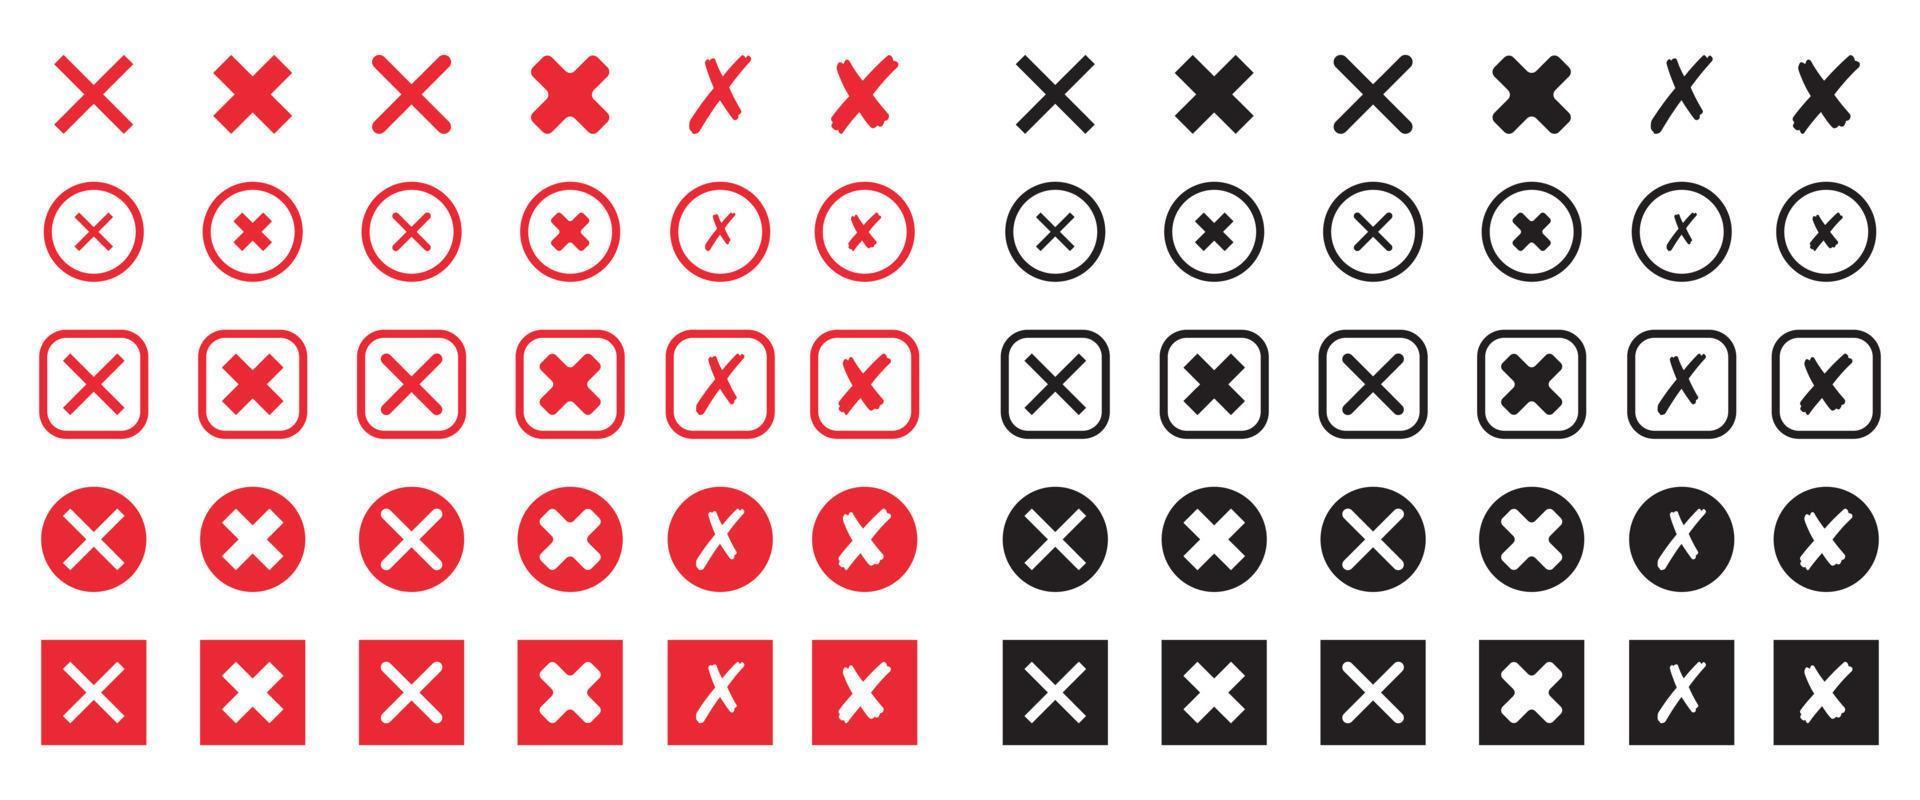 Satz von roten und schwarzen Kreuzsymbolen. x-Markierungssymbol im flachen Stil. Vektor